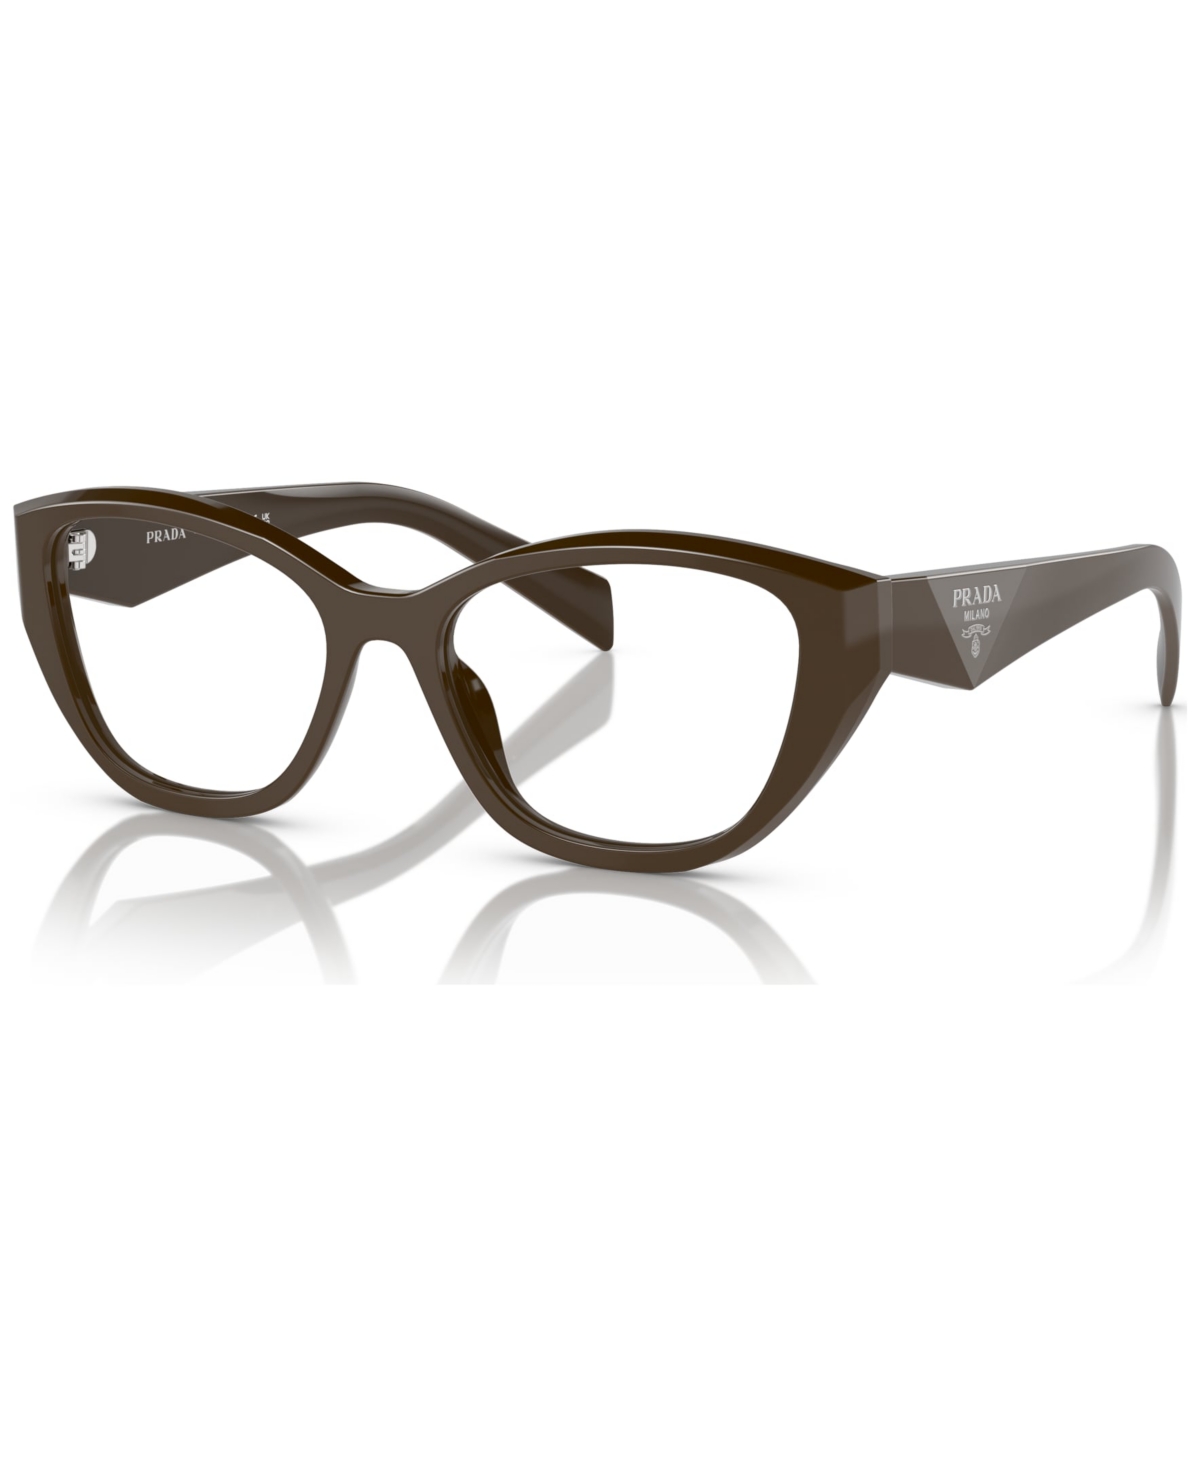 Women's Eyeglasses, Pr 21ZV - Tortoise